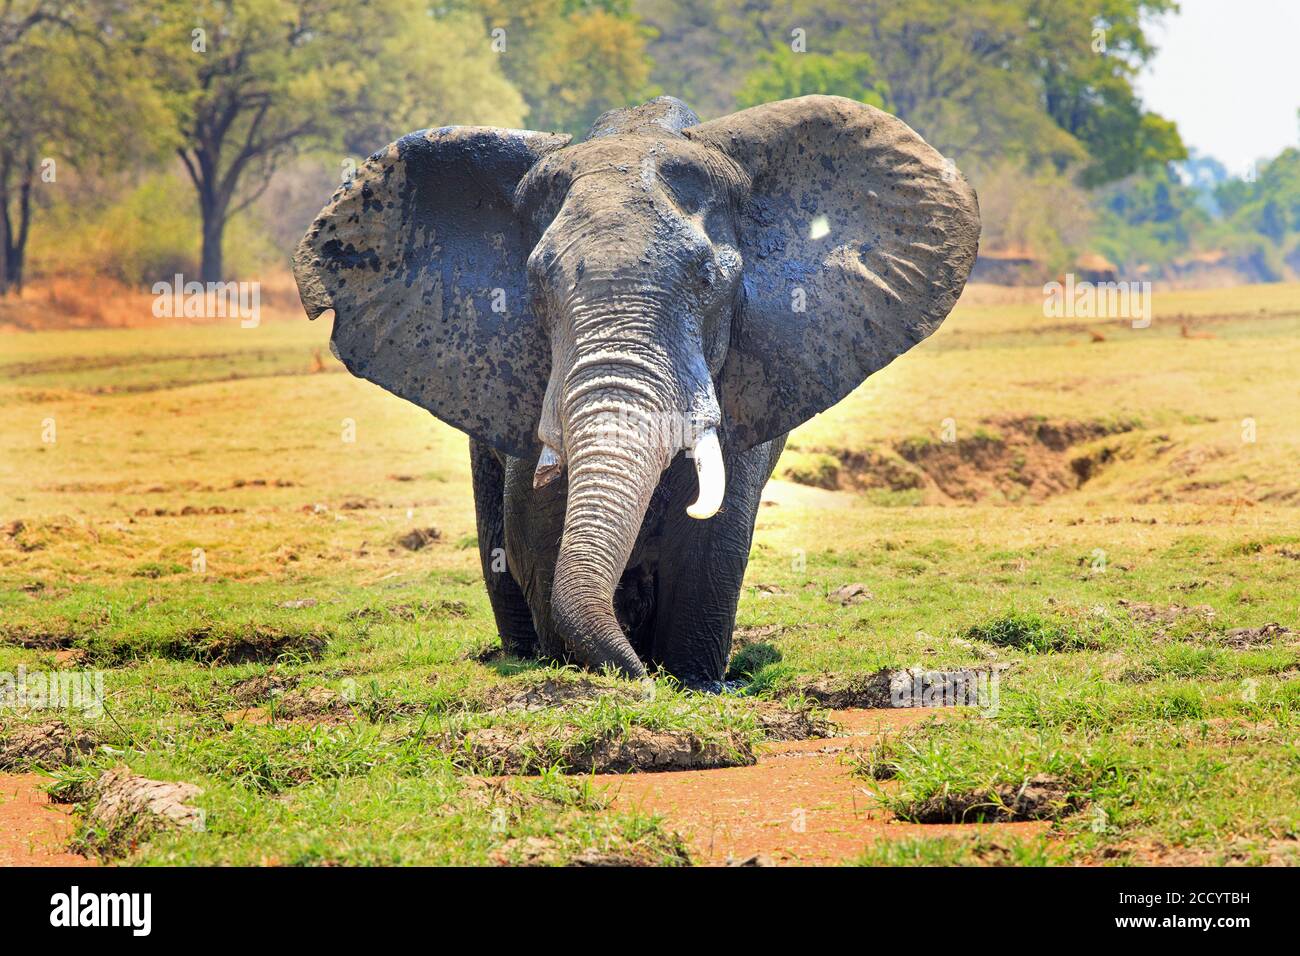 Elefante africano con orejas rompiendo de pie en una laguna de alimentación con un vibrante fondo natural de bushveld Foto de stock